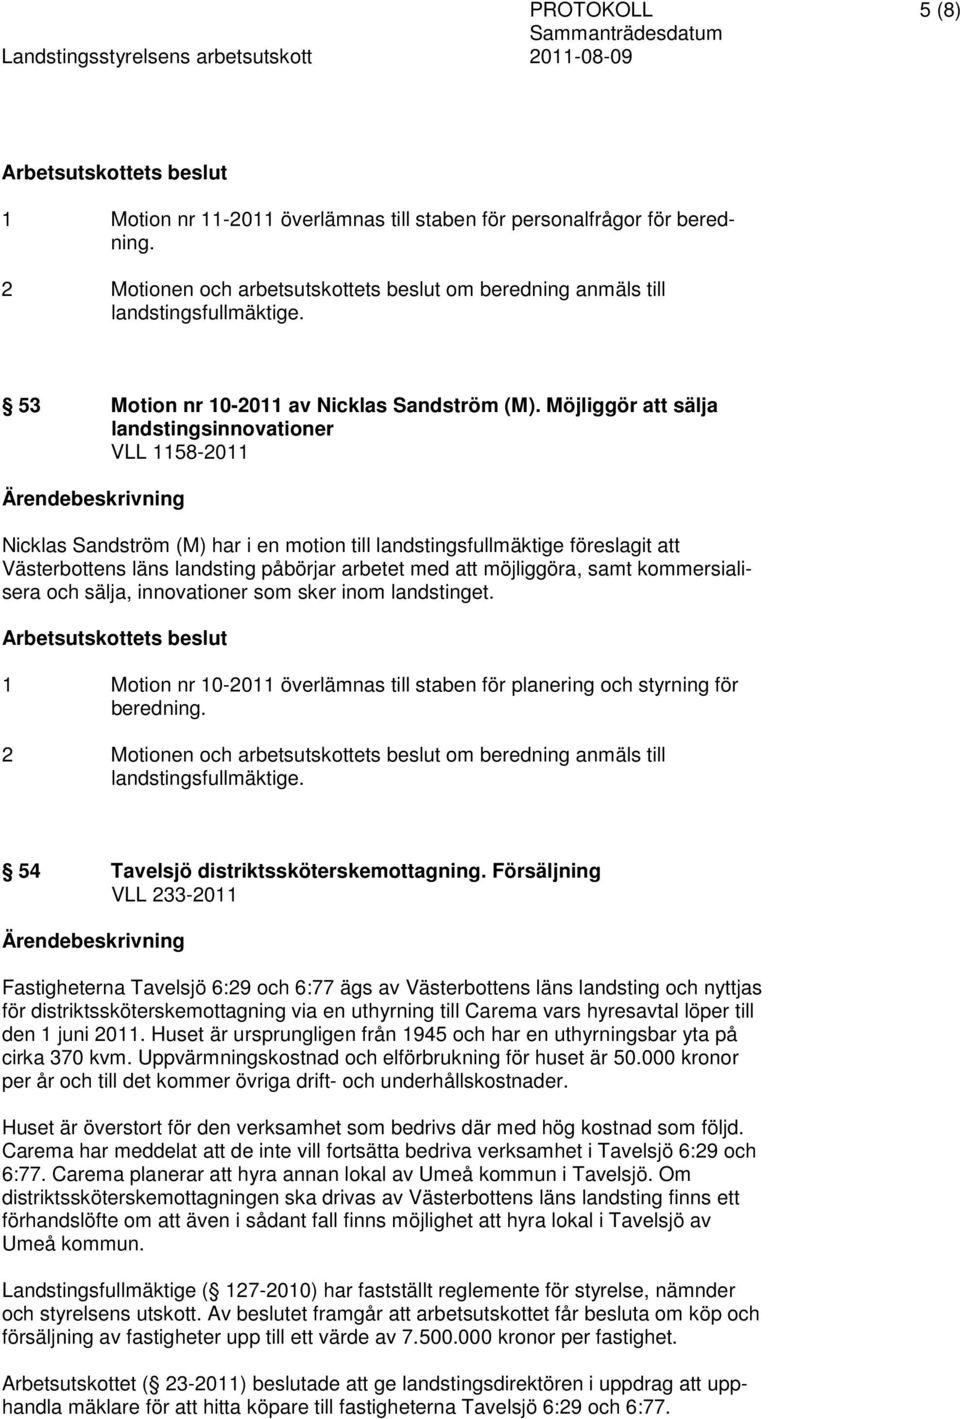 Möjliggör att sälja landstingsinnovationer VLL 1158-2011 Nicklas Sandström (M) har i en motion till landstingsfullmäktige föreslagit att Västerbottens läns landsting påbörjar arbetet med att